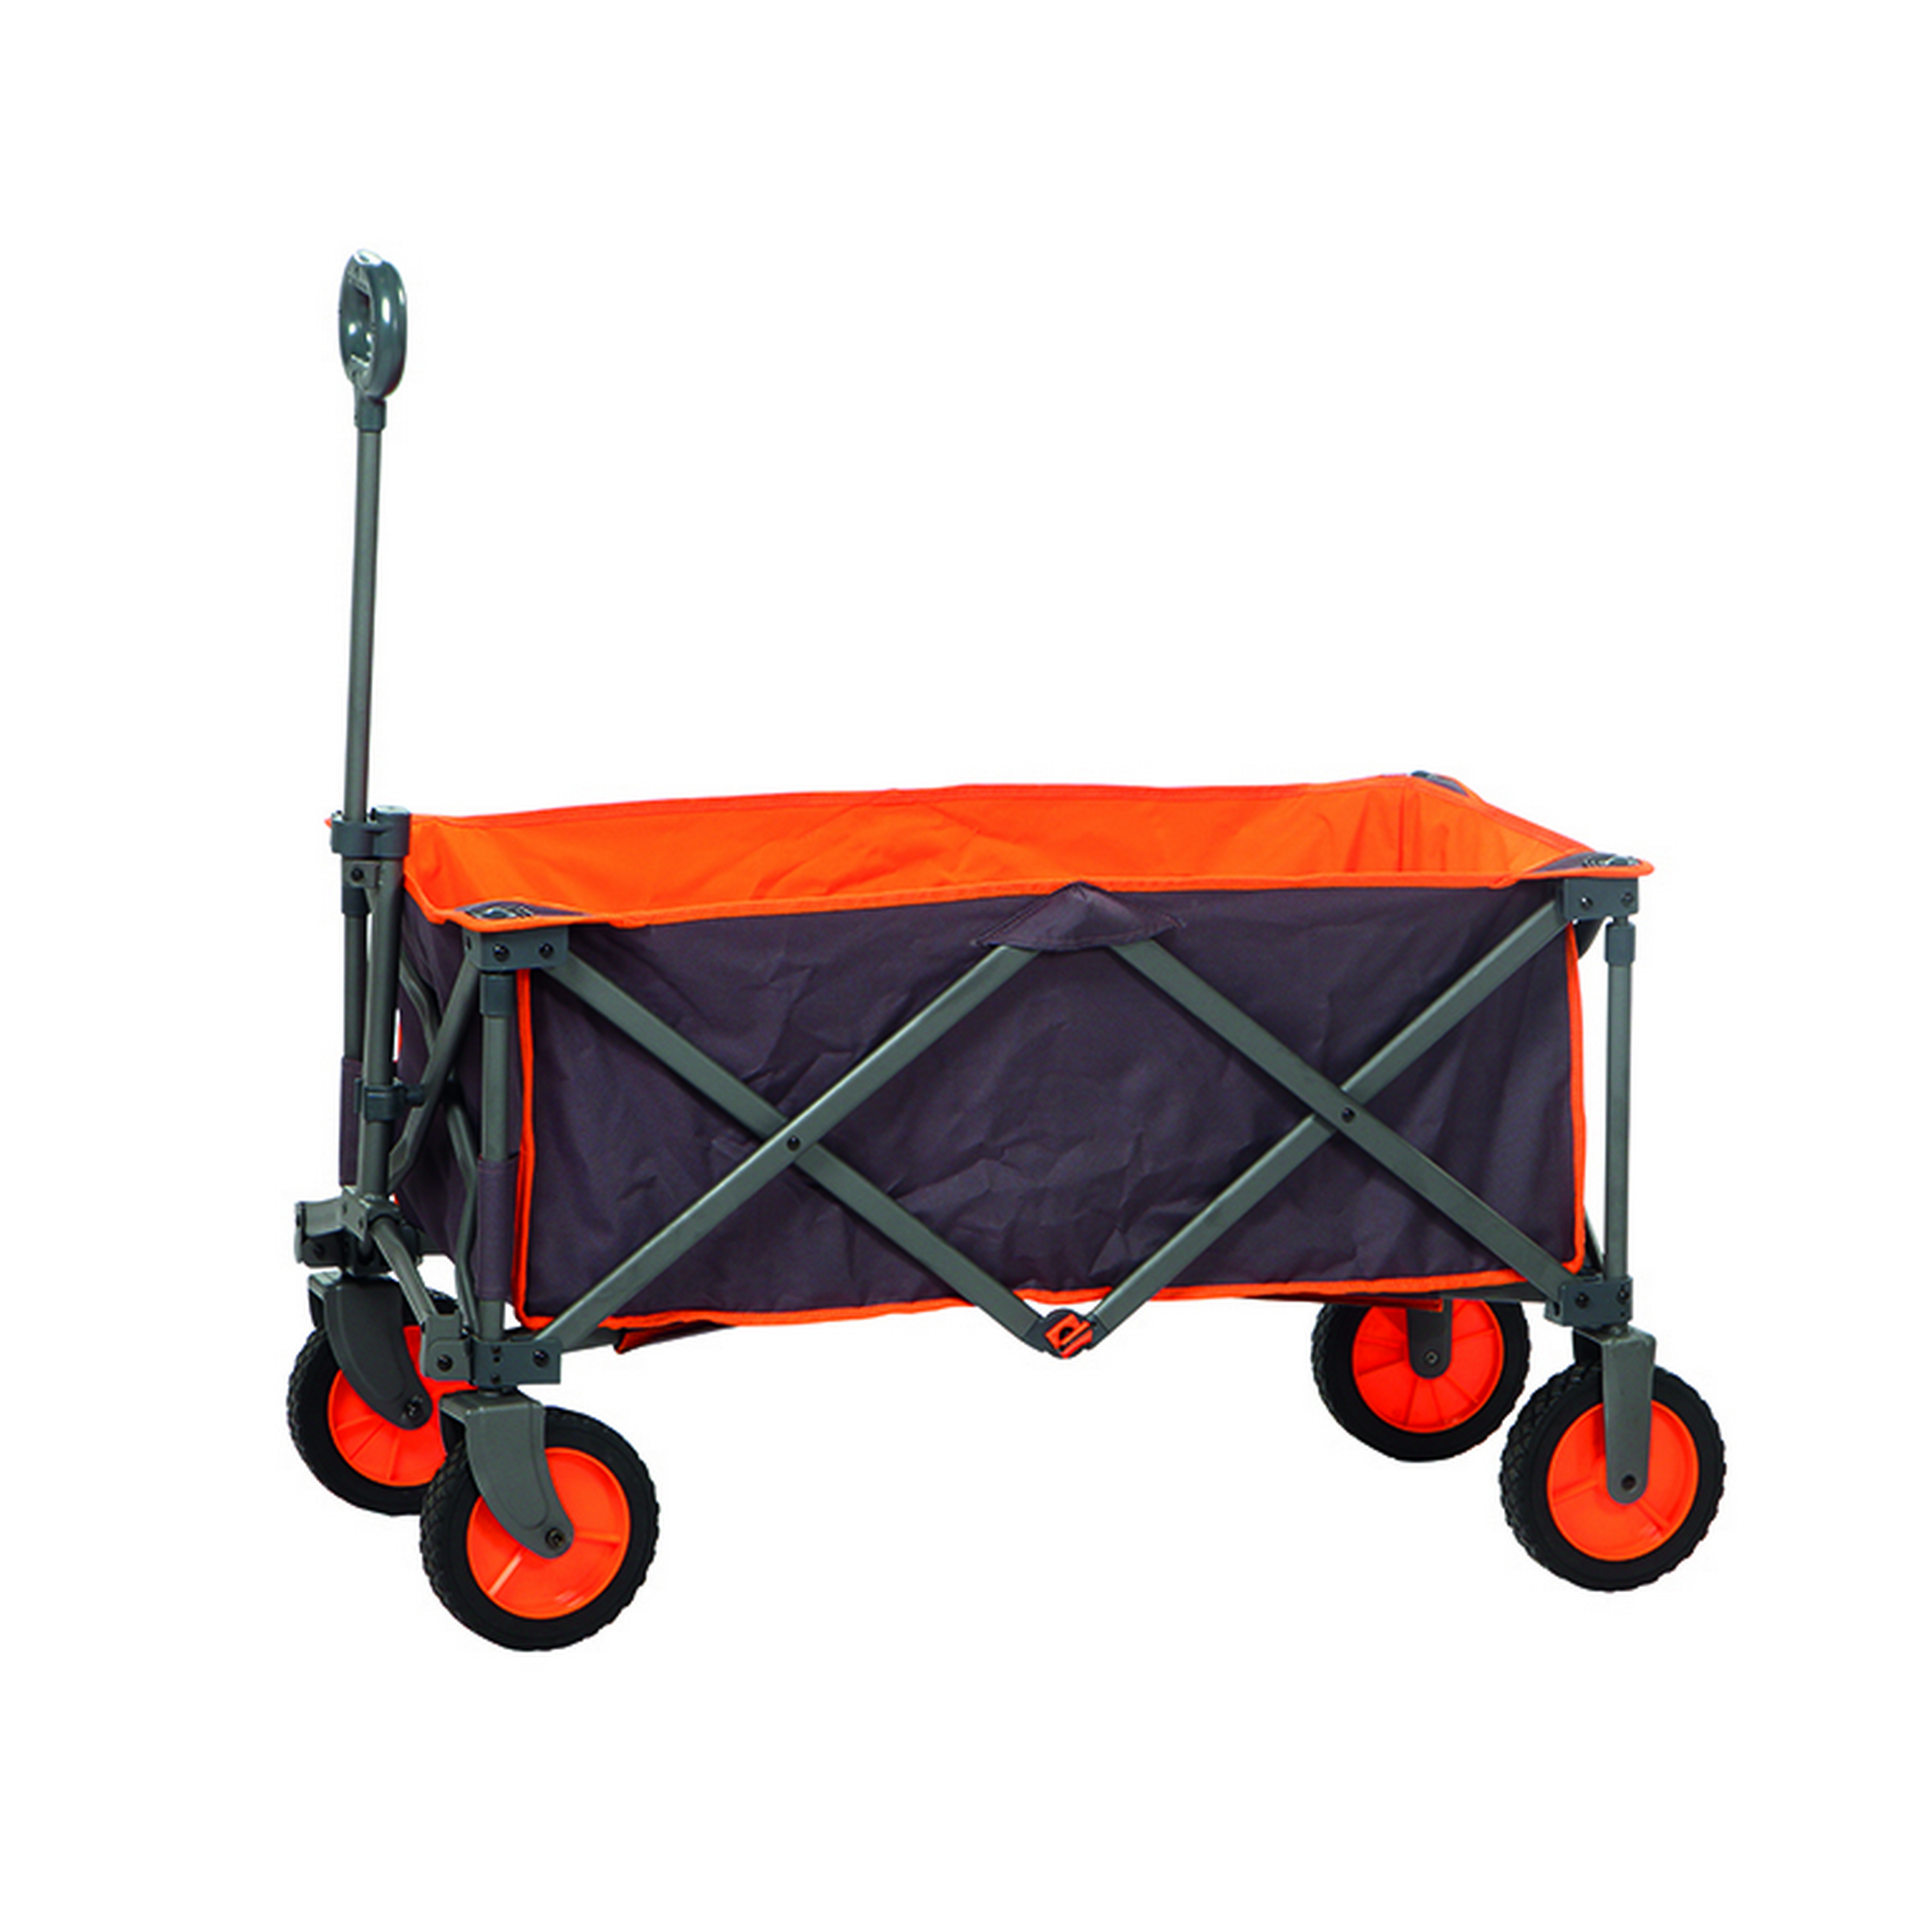 Faltbollerwagen 'Alf' grau-orange 91 x 45 x 55 cm + product picture